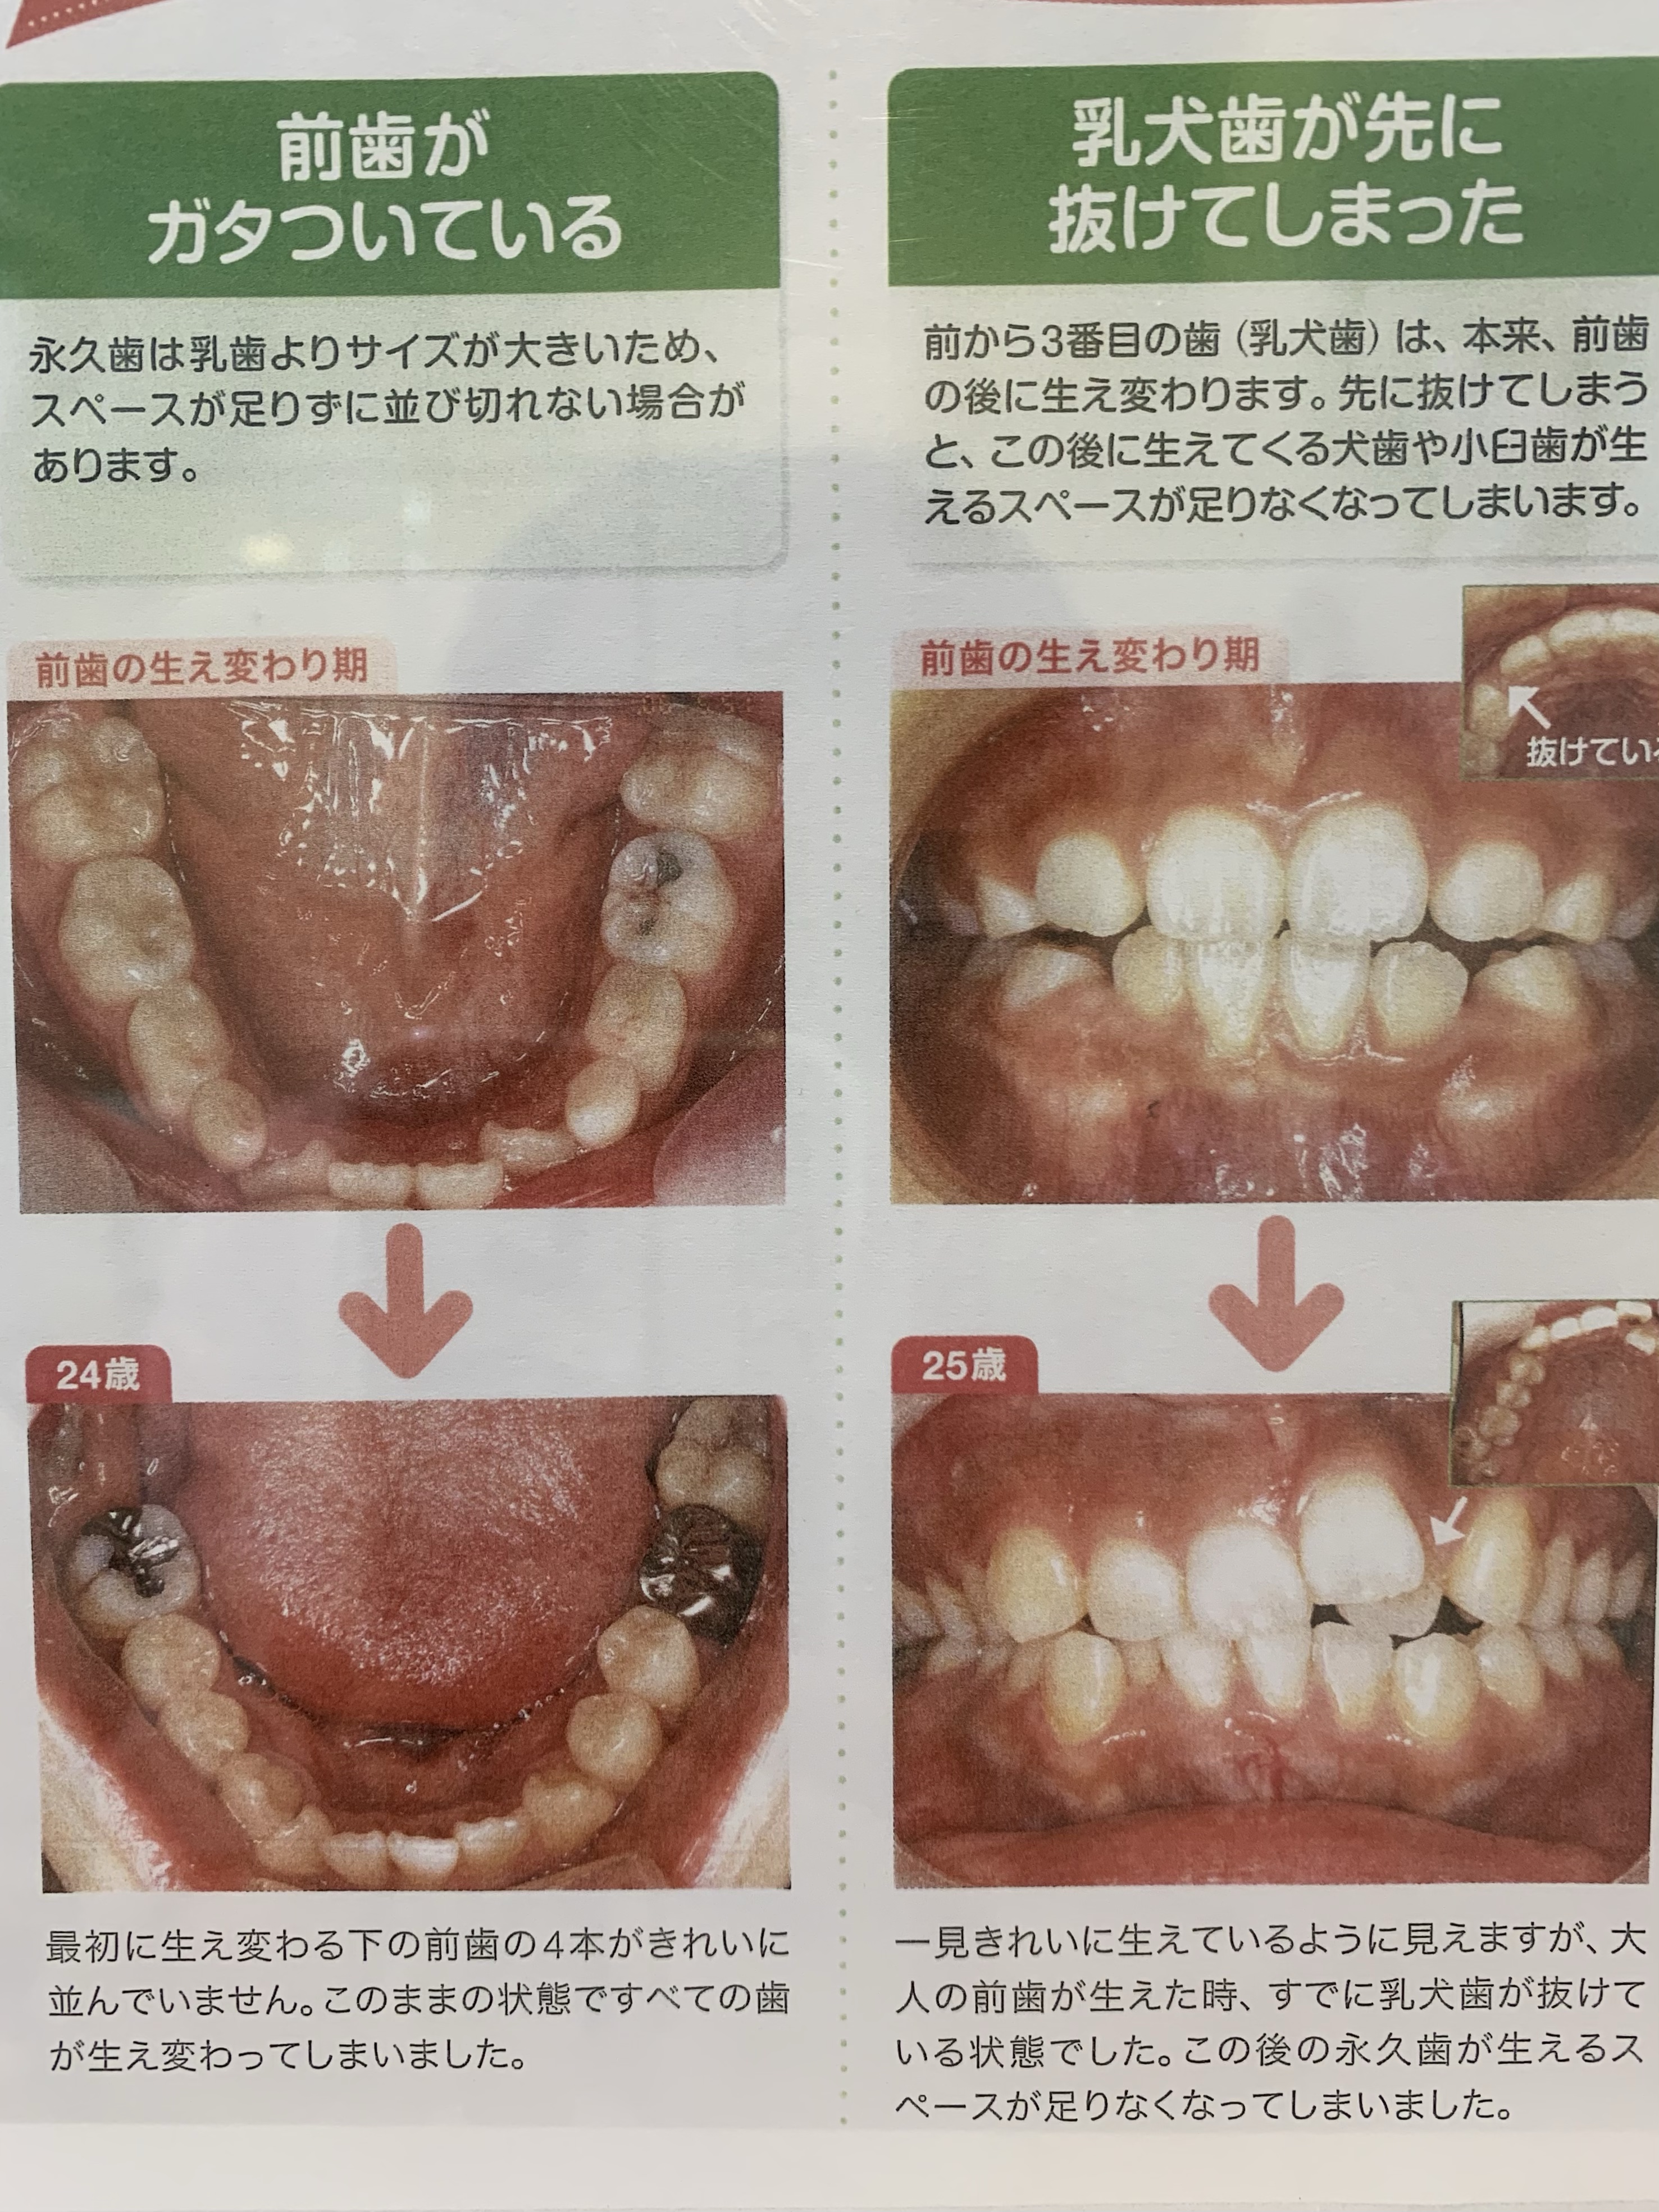 虫歯 麦茶 保育園での歯みがきについて質問です。全国で歯みがきの事故が多く、保育園での歯みがきがなく…